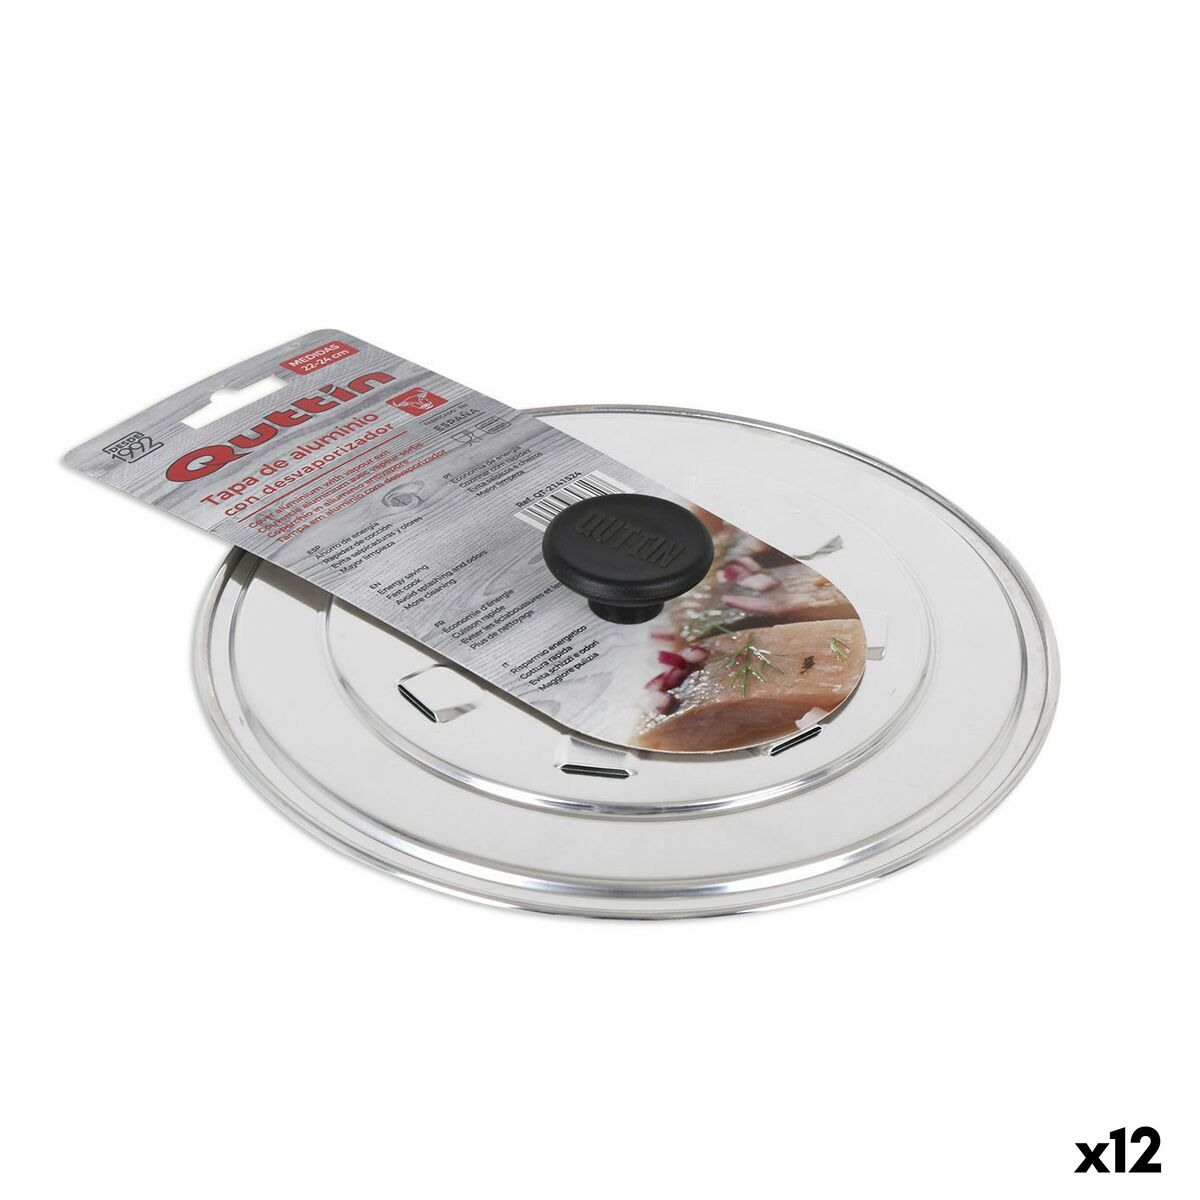 Касерола Quttin Grand Chef 3 mm (6 броя)